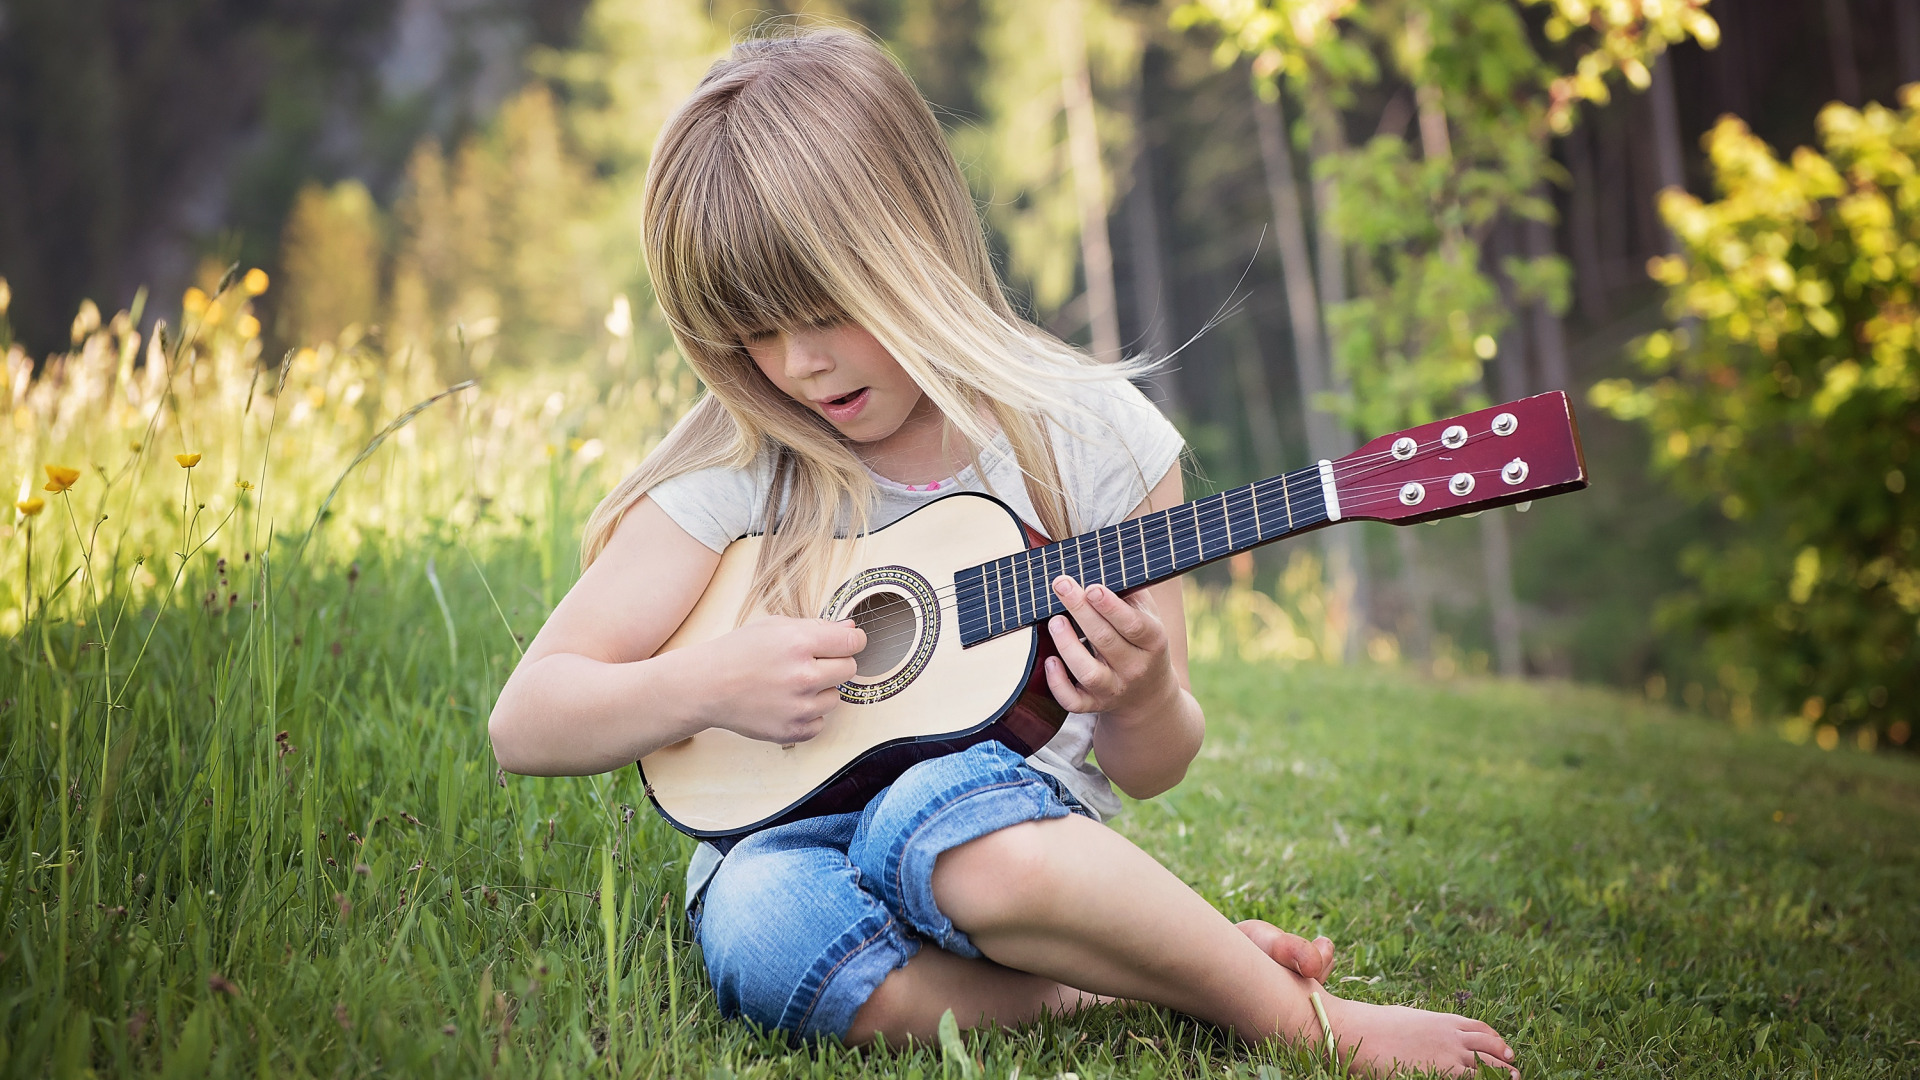 Люди увлекающиеся музыкой. Обои маленькая девочка с гитарой. Две девочки на гитаре. Красивая девушка с гитарой. Гитара на природе.